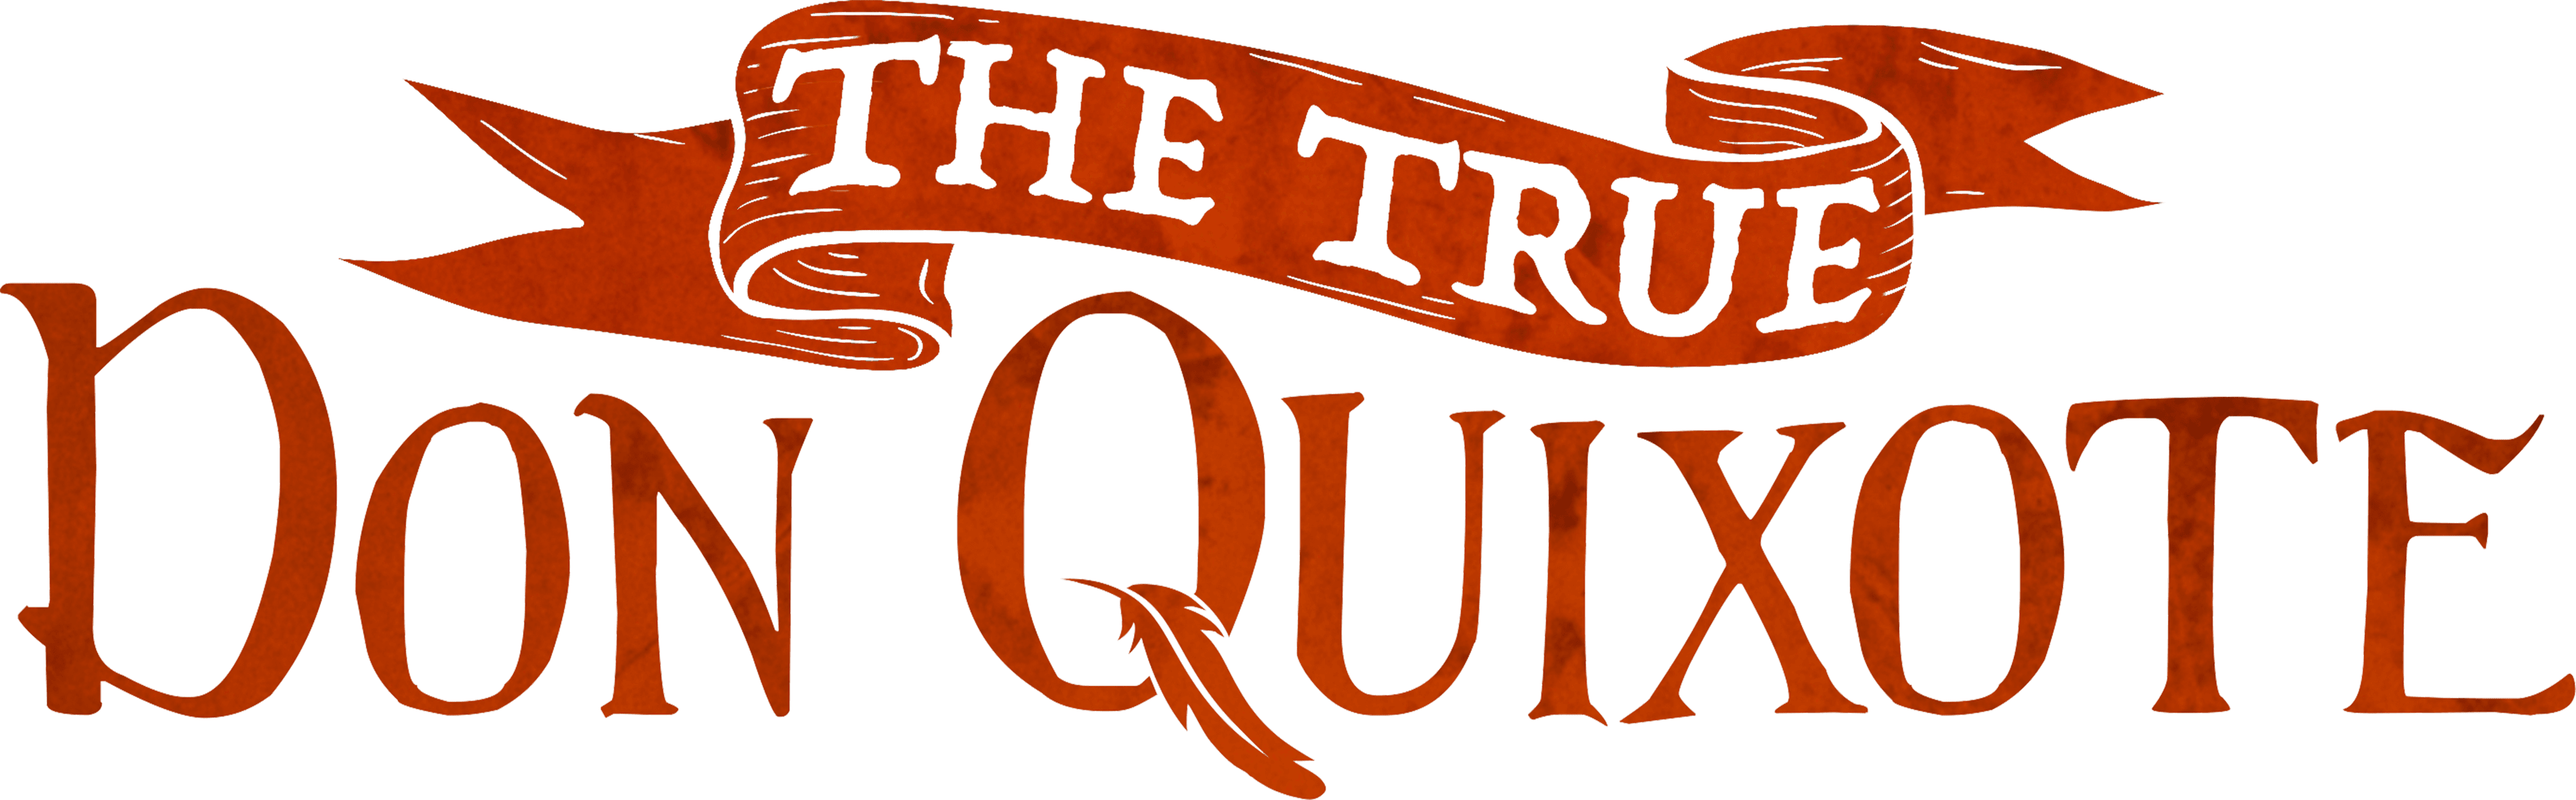 The True Don Quixote logo